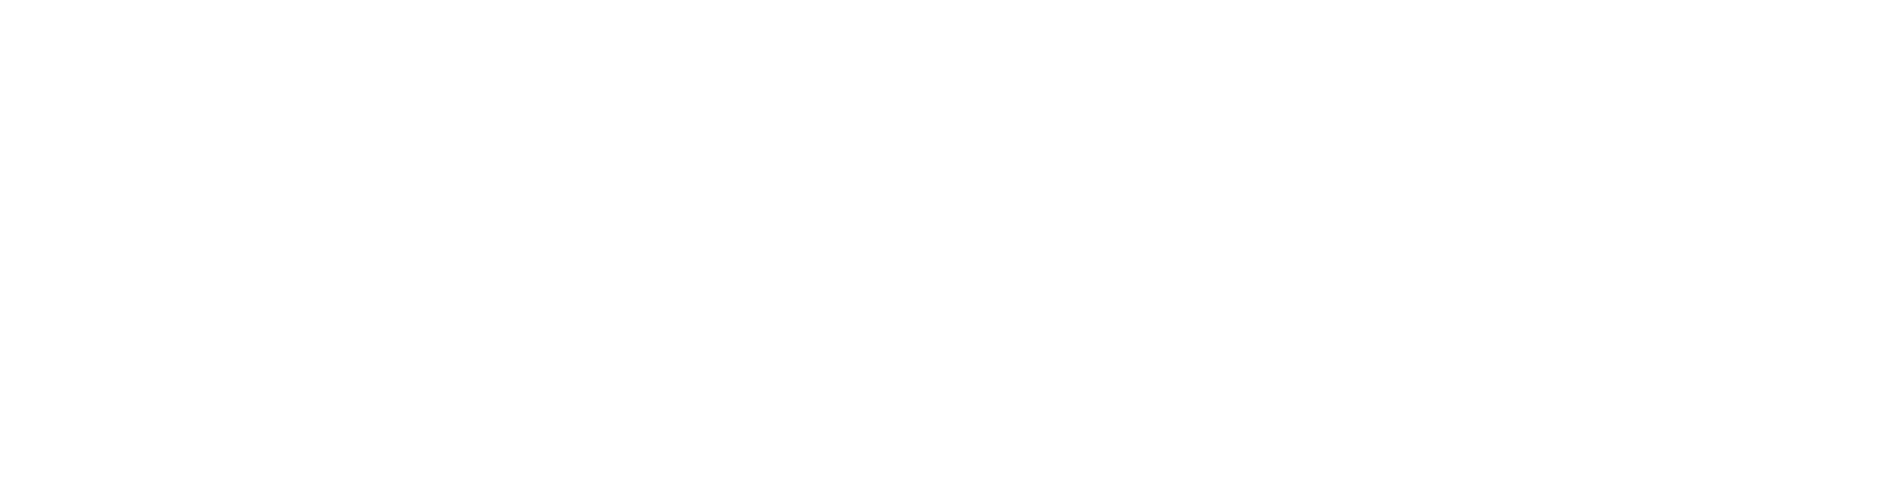 Cloudwords_logo_WHITE_landscape